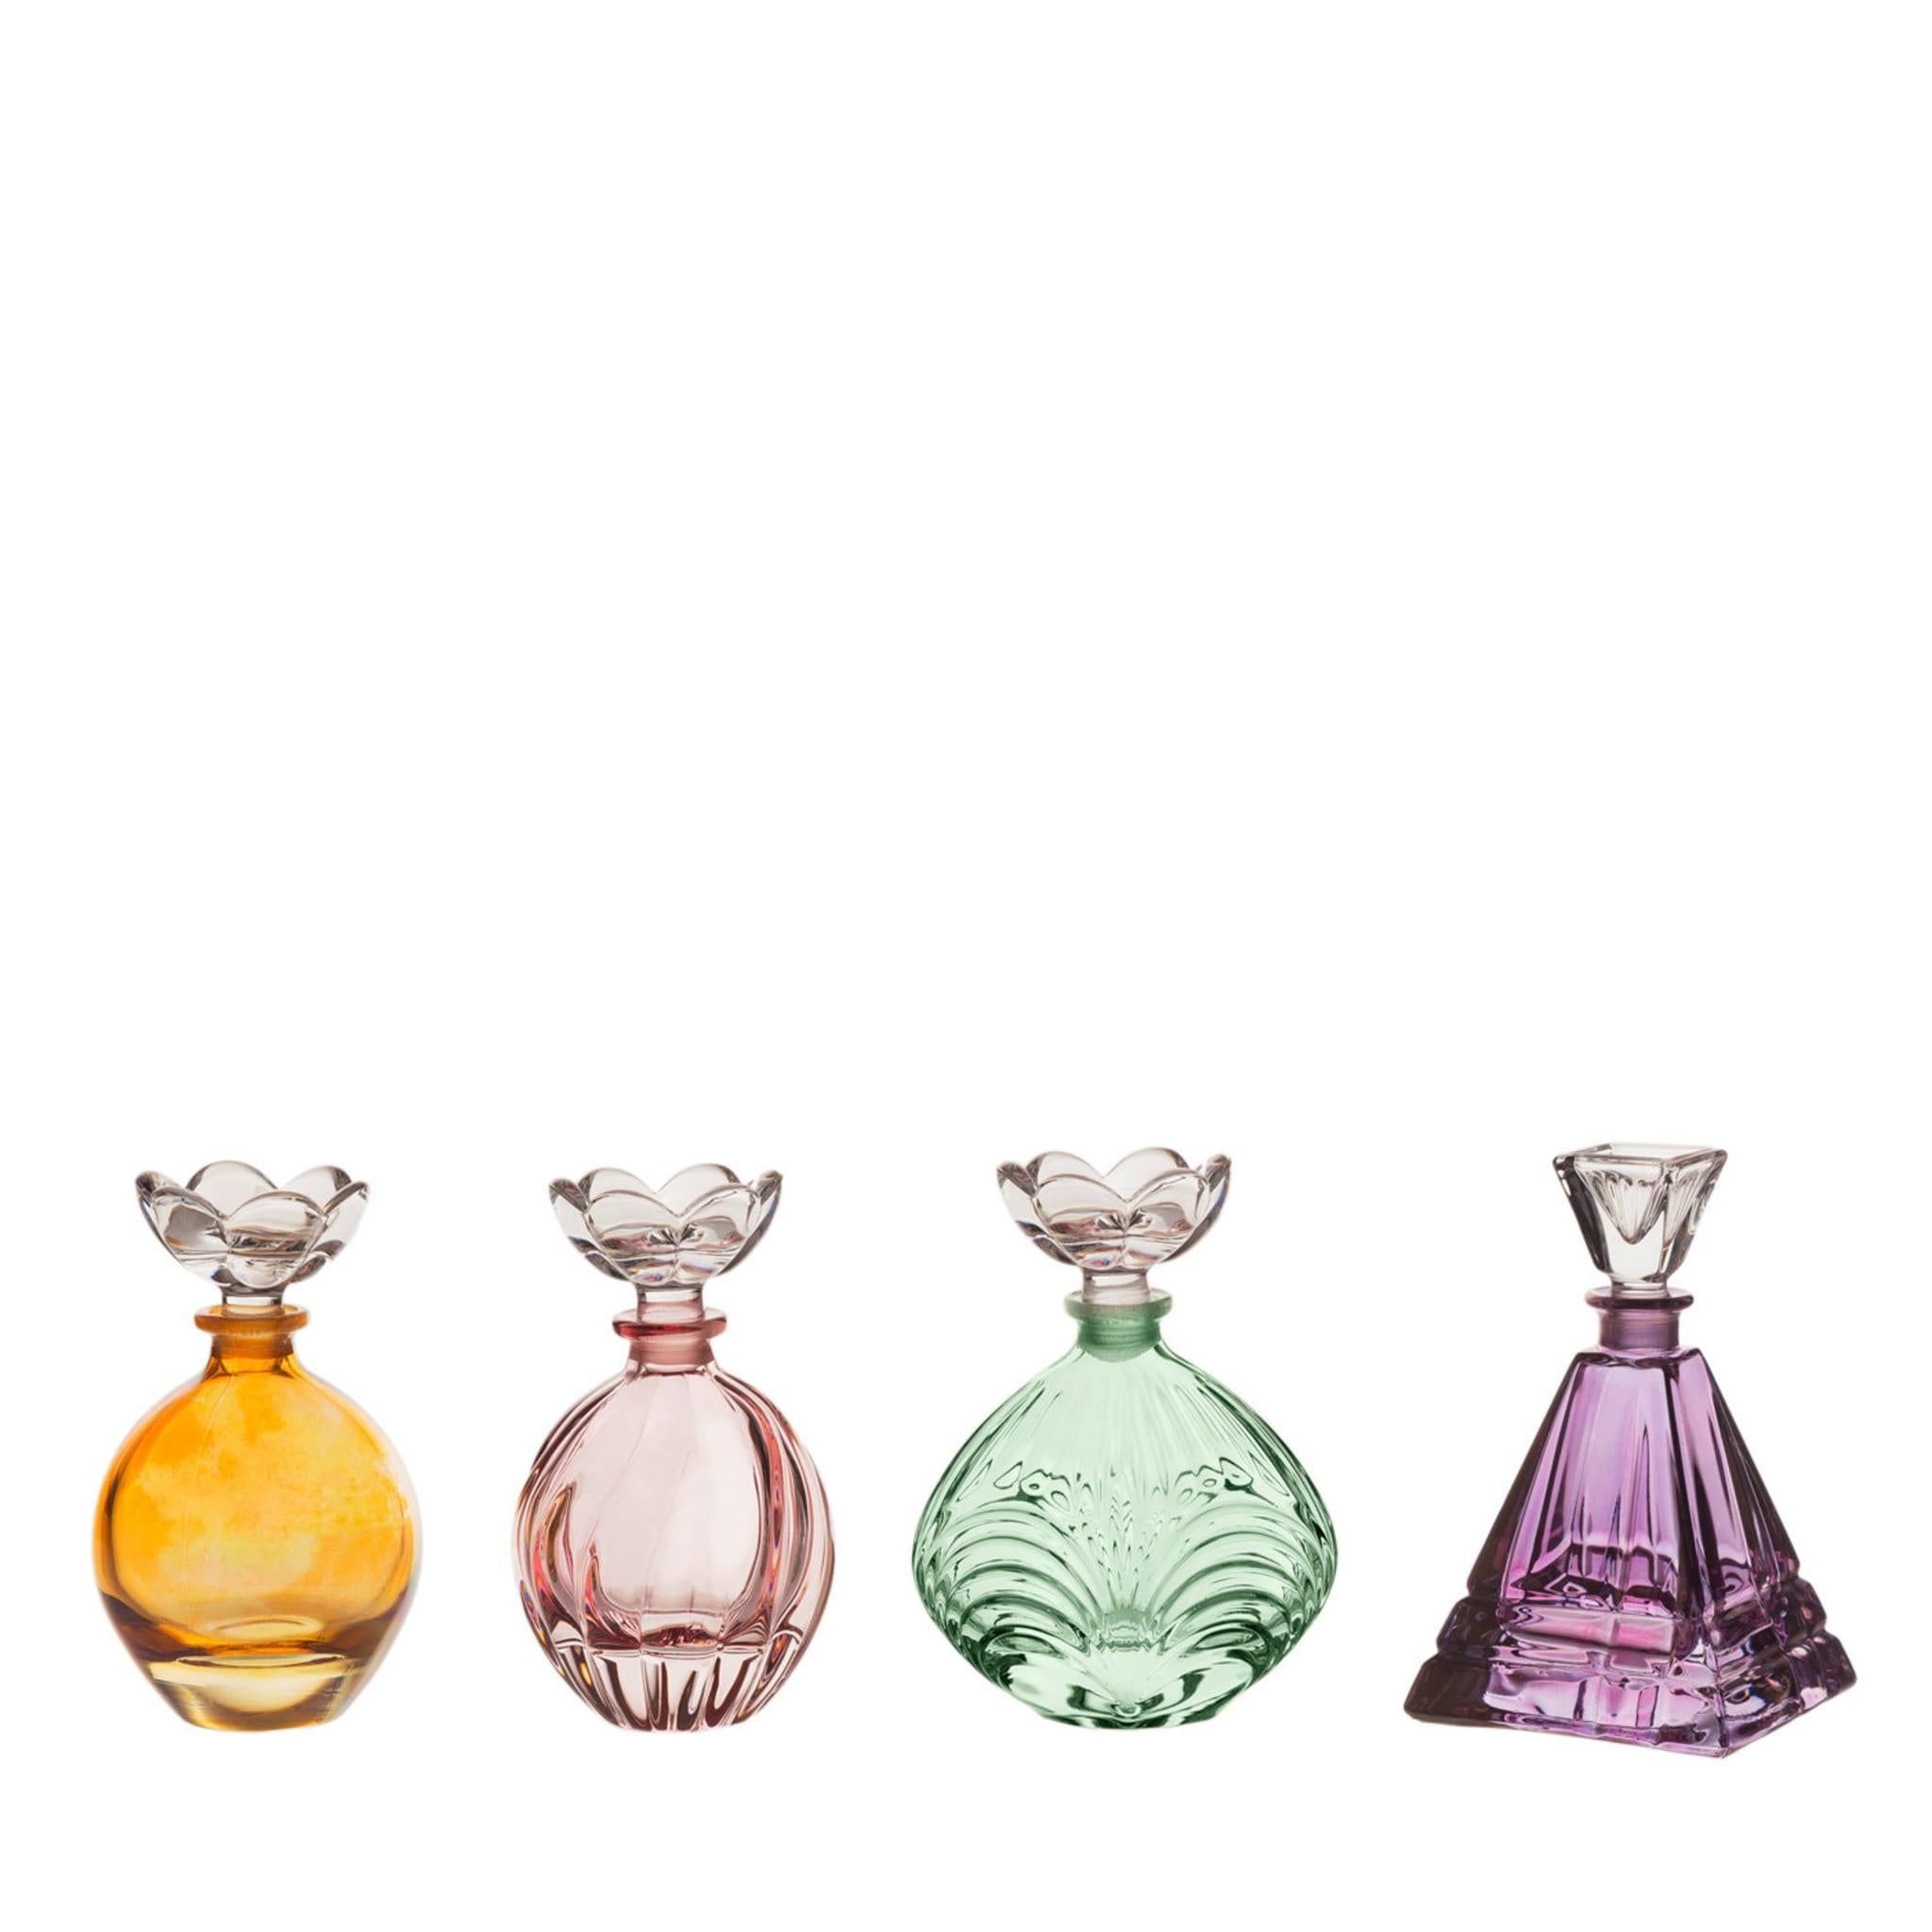 Diese eleganten Parfümflakons aus Kristall gehören zur Xmas Collection und sind eine wunderbare Ergänzung für den Waschtisch im Schlafzimmer oder im Badezimmer. Die traditionelle Silhouette, die handgefertigten, geätzten Verzierungen auf der Flasche